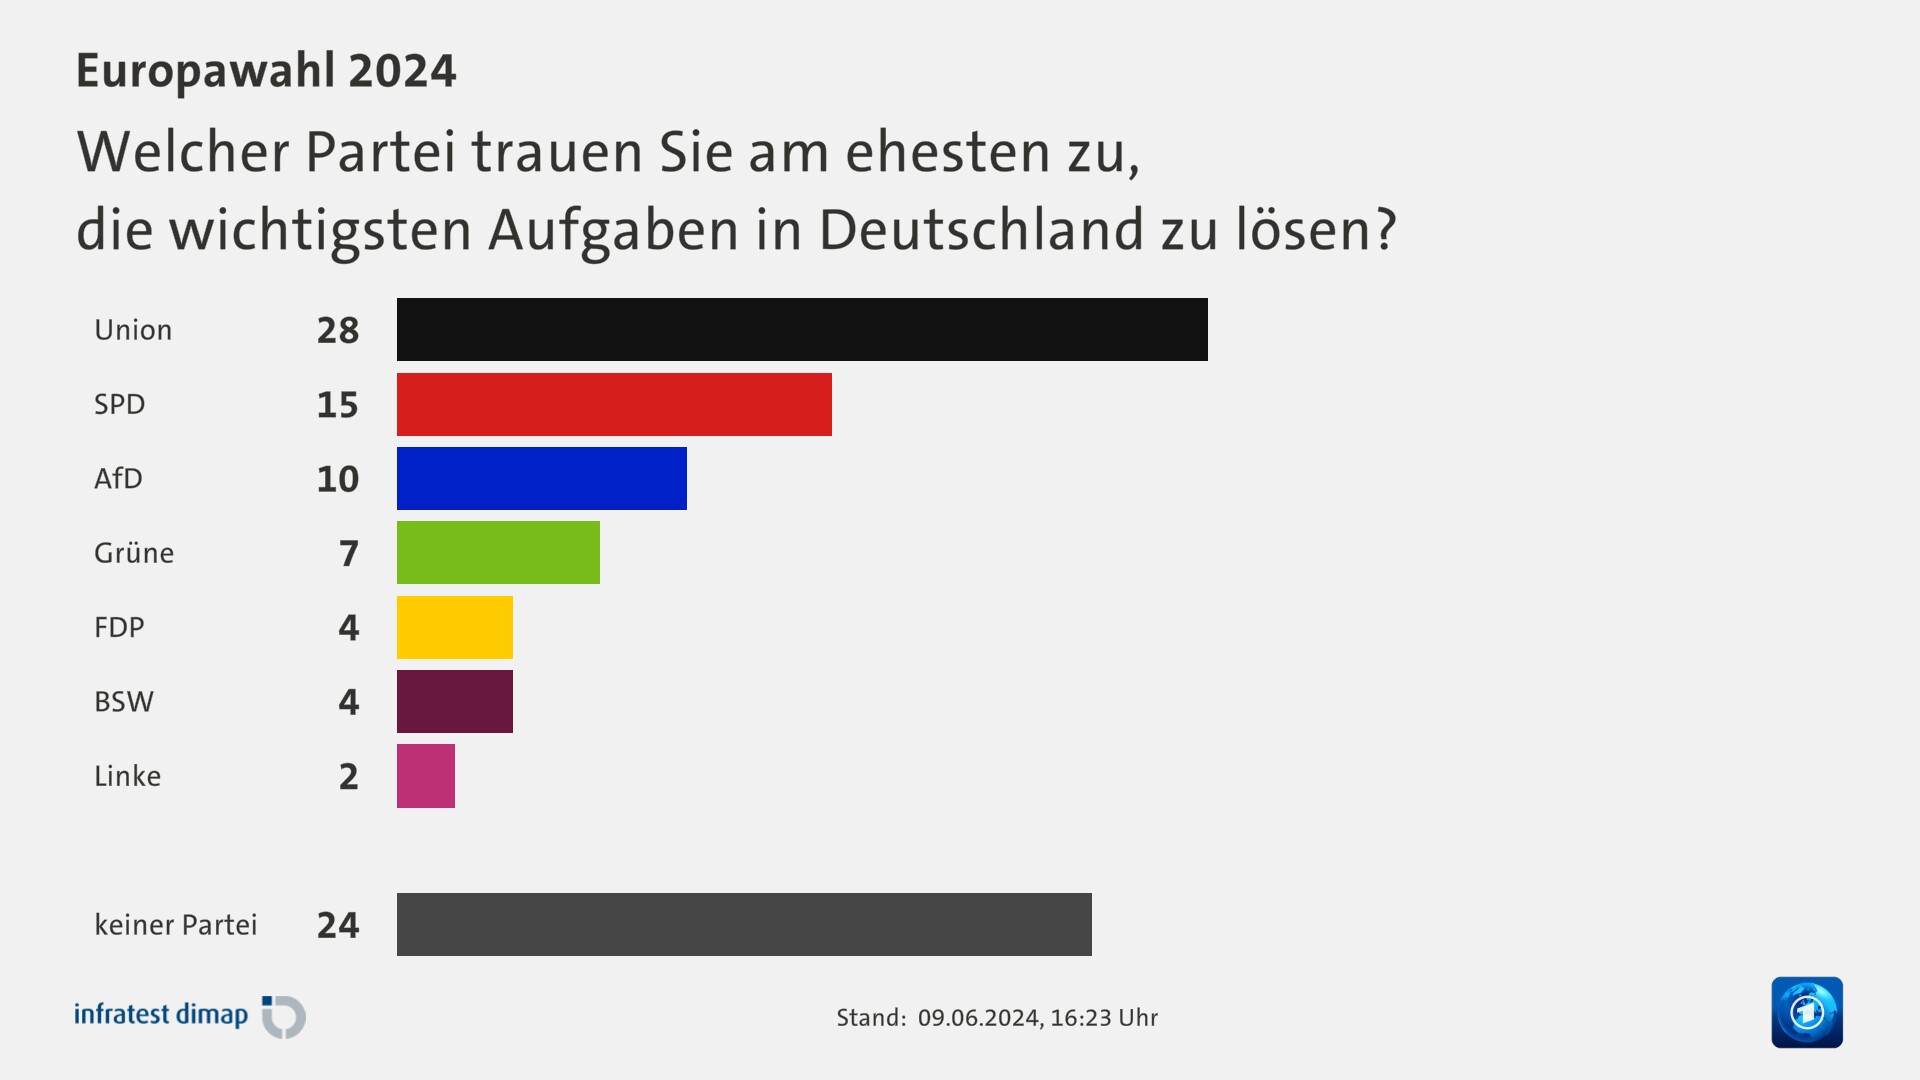 Welcher Partei trauen Sie am ehesten zu,|die wichtigsten Aufgaben in Deutschland zu lösen?